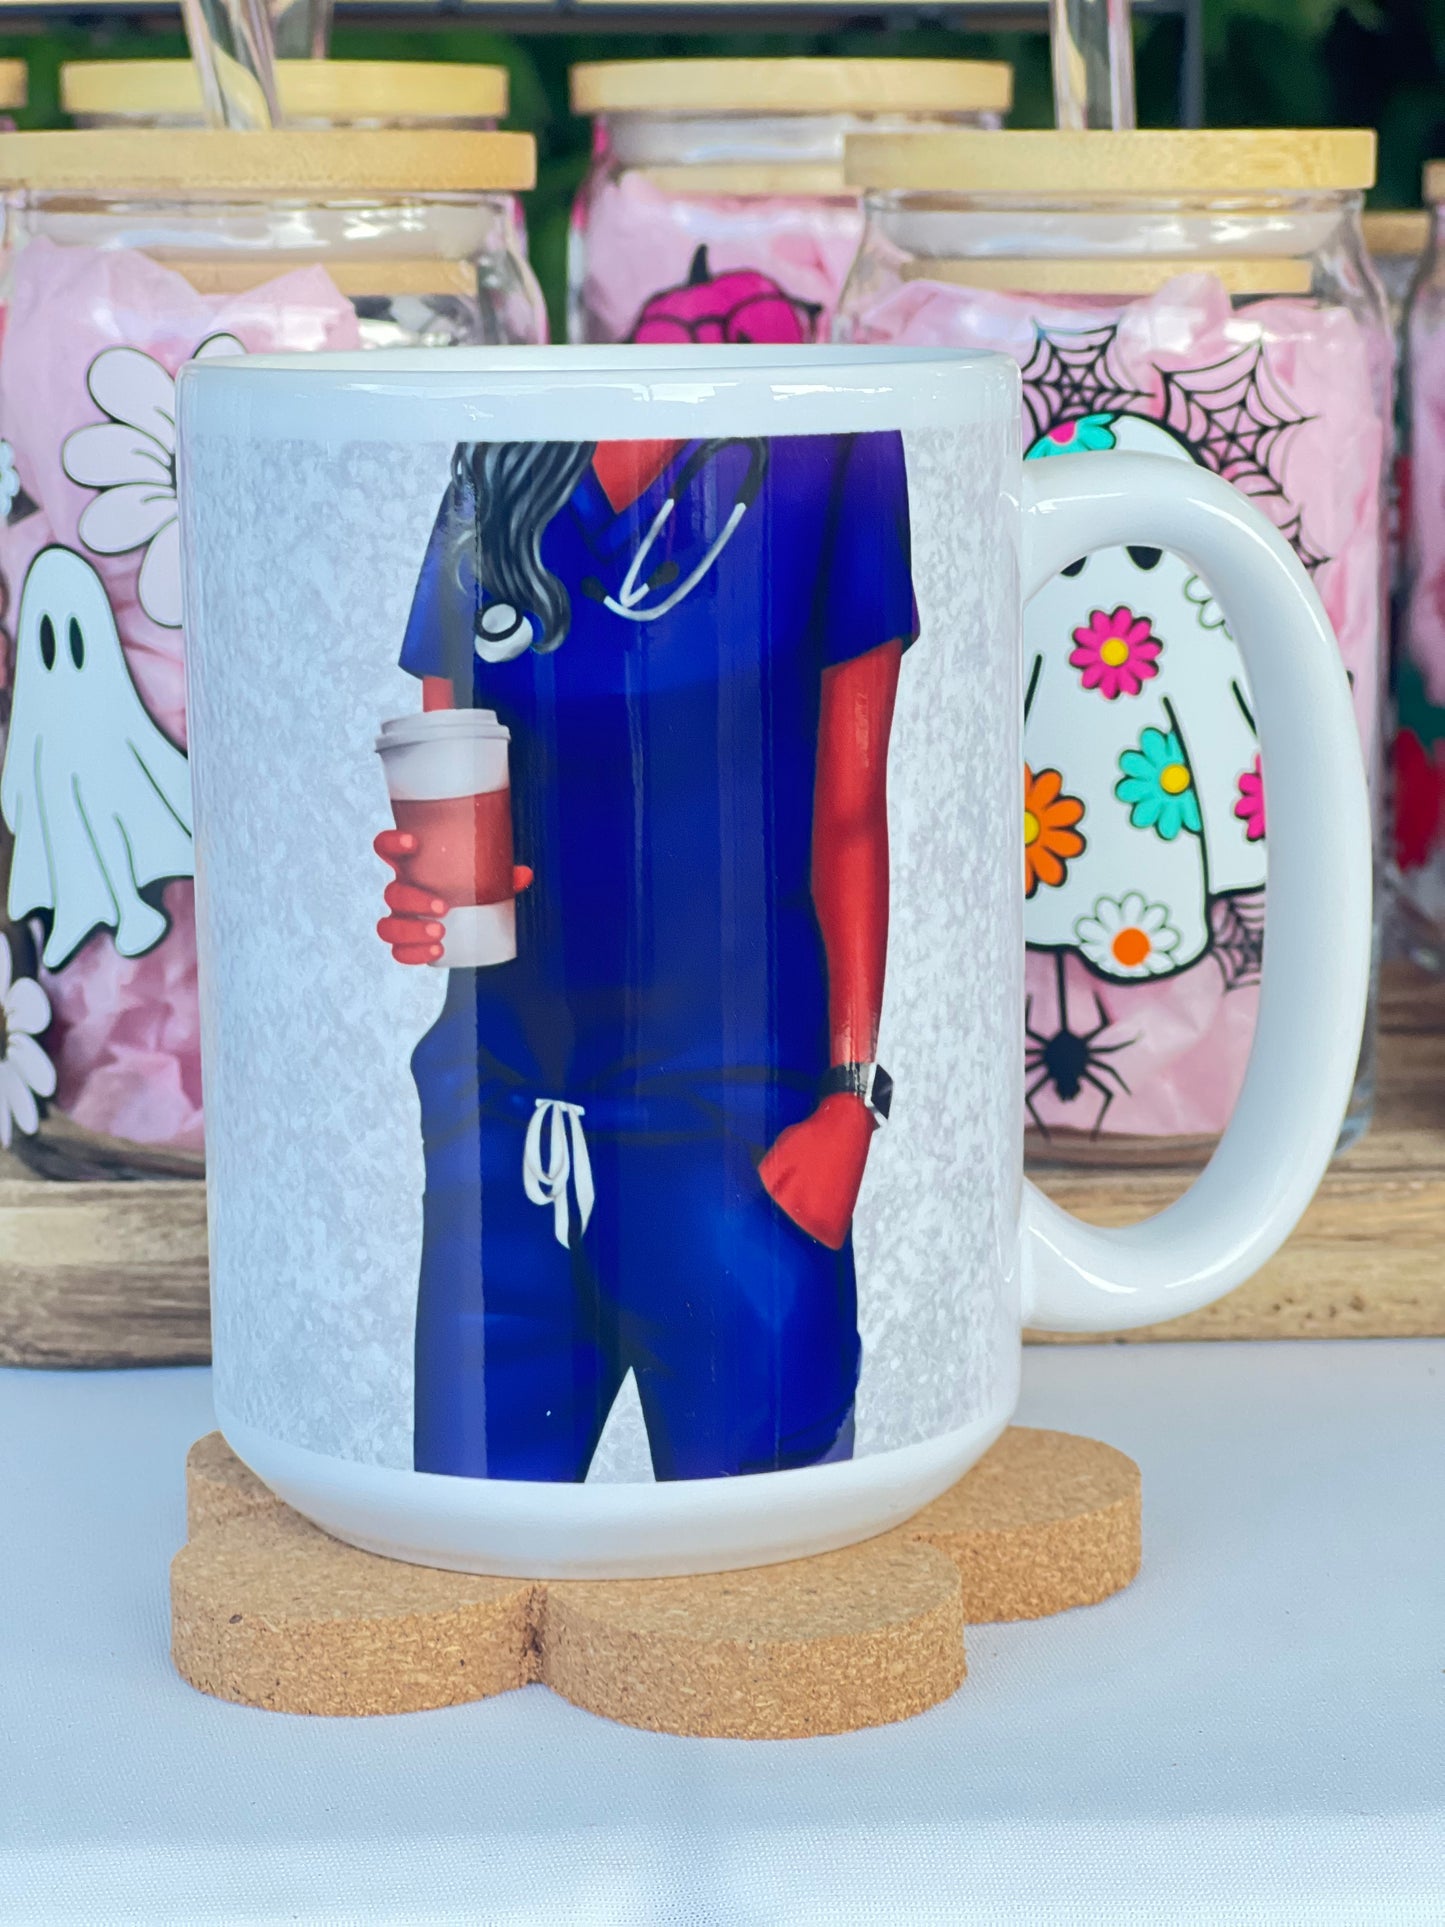 Nurse Coffee Mug, Tea Mug.